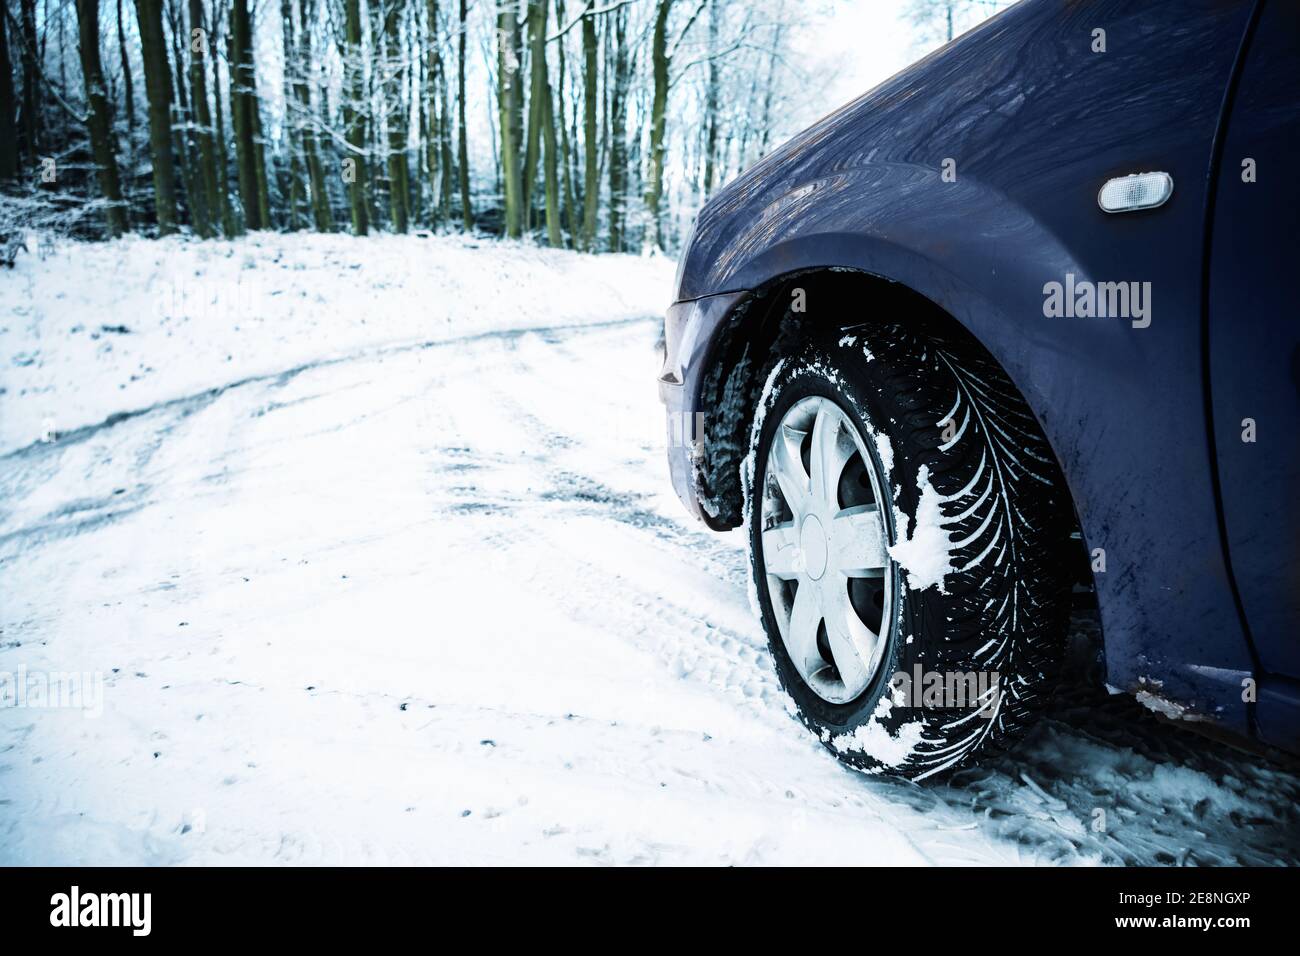 Teil eines Autos auf einer mit Schnee bedeckten Landstraße, Gefahr durch rutschige Bedingungen beim Fahren im Winter, Konzept für den Sicherheitsverkehr, Kopierplatz, s Stockfoto